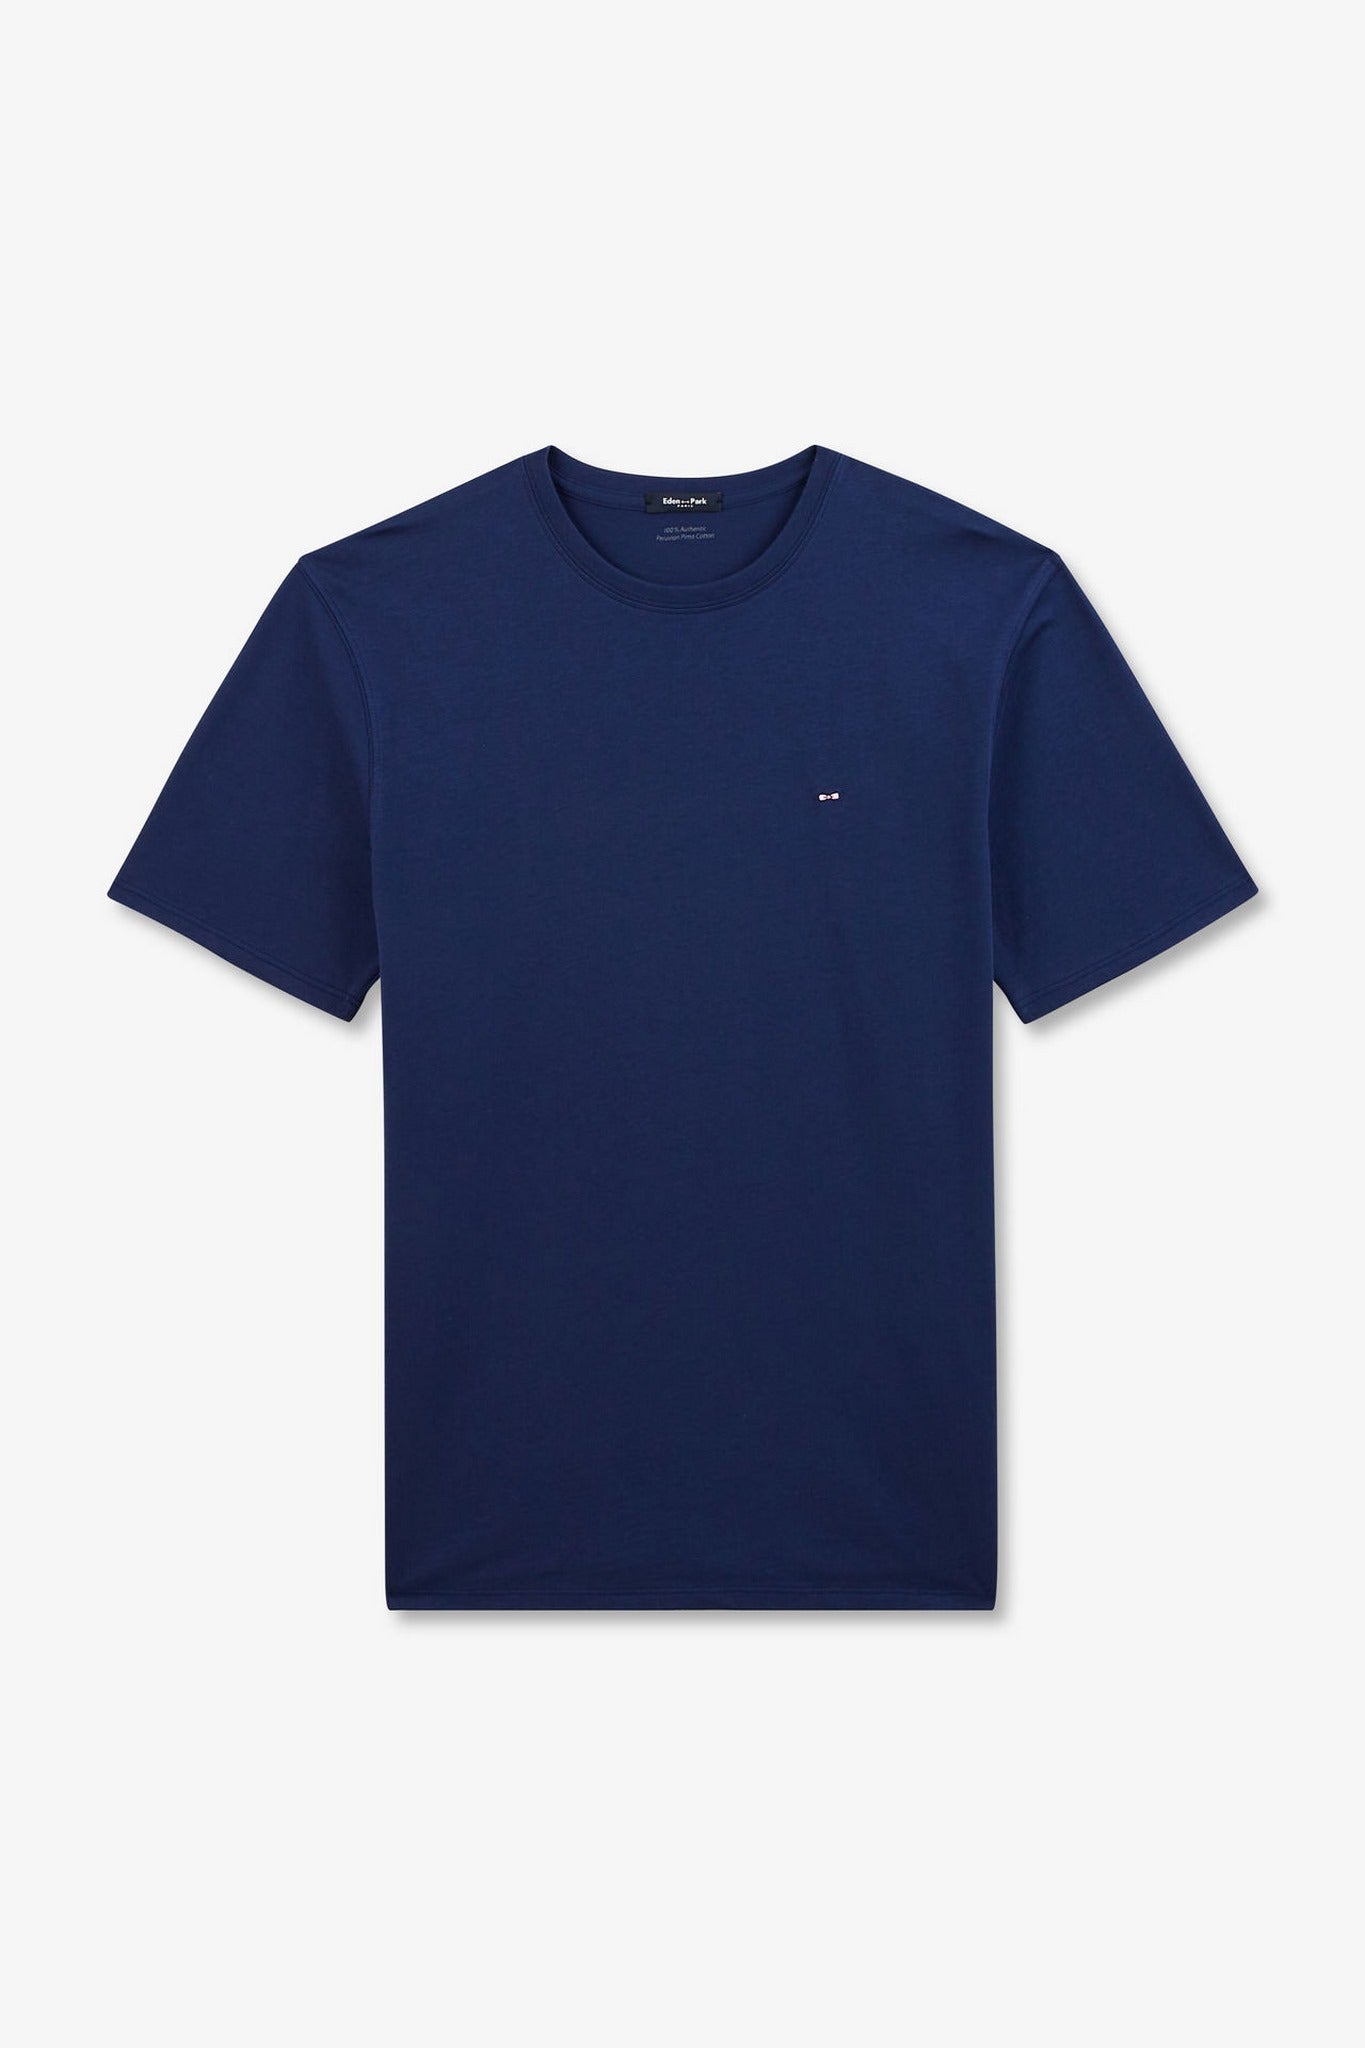 T-shirt bleu foncé à manches courtes - Image 2